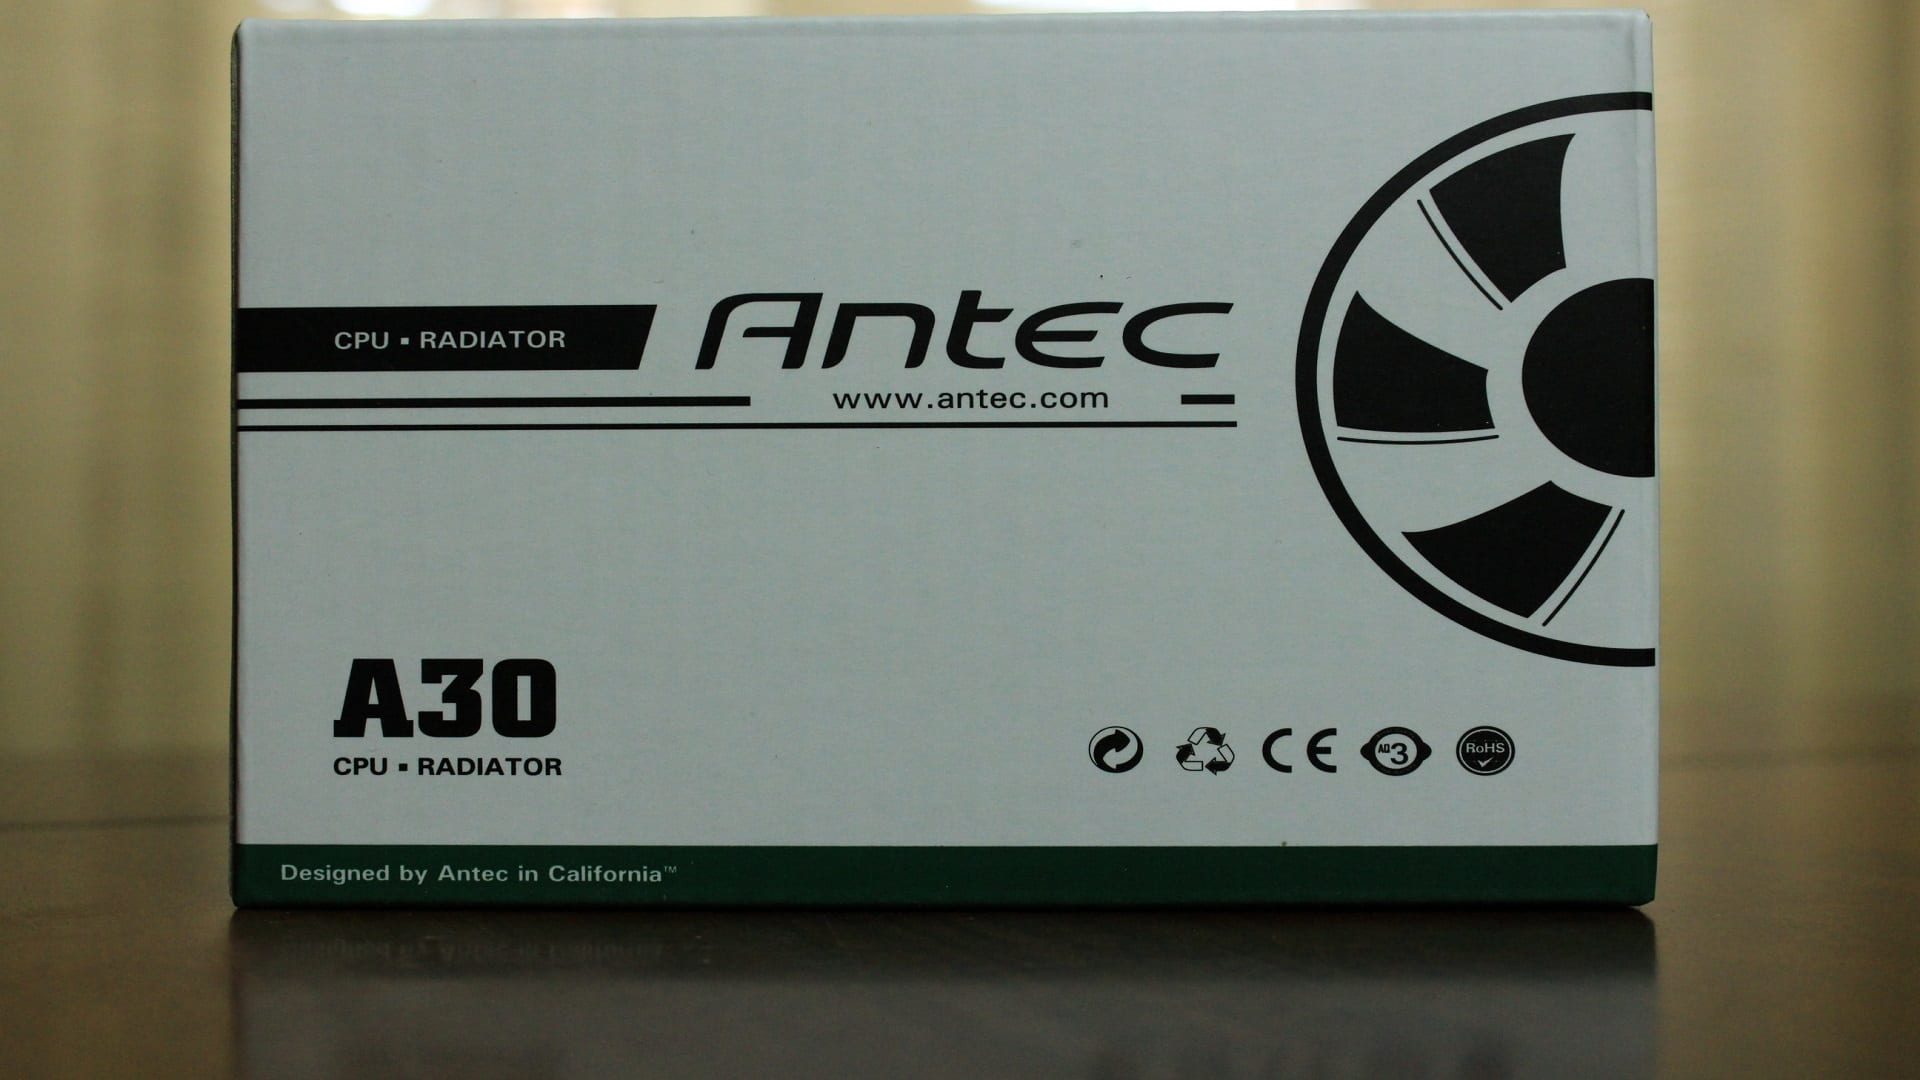 Antec Ventola Antec A30 sistema di raffreddamento processore 0-761345-10922-2 